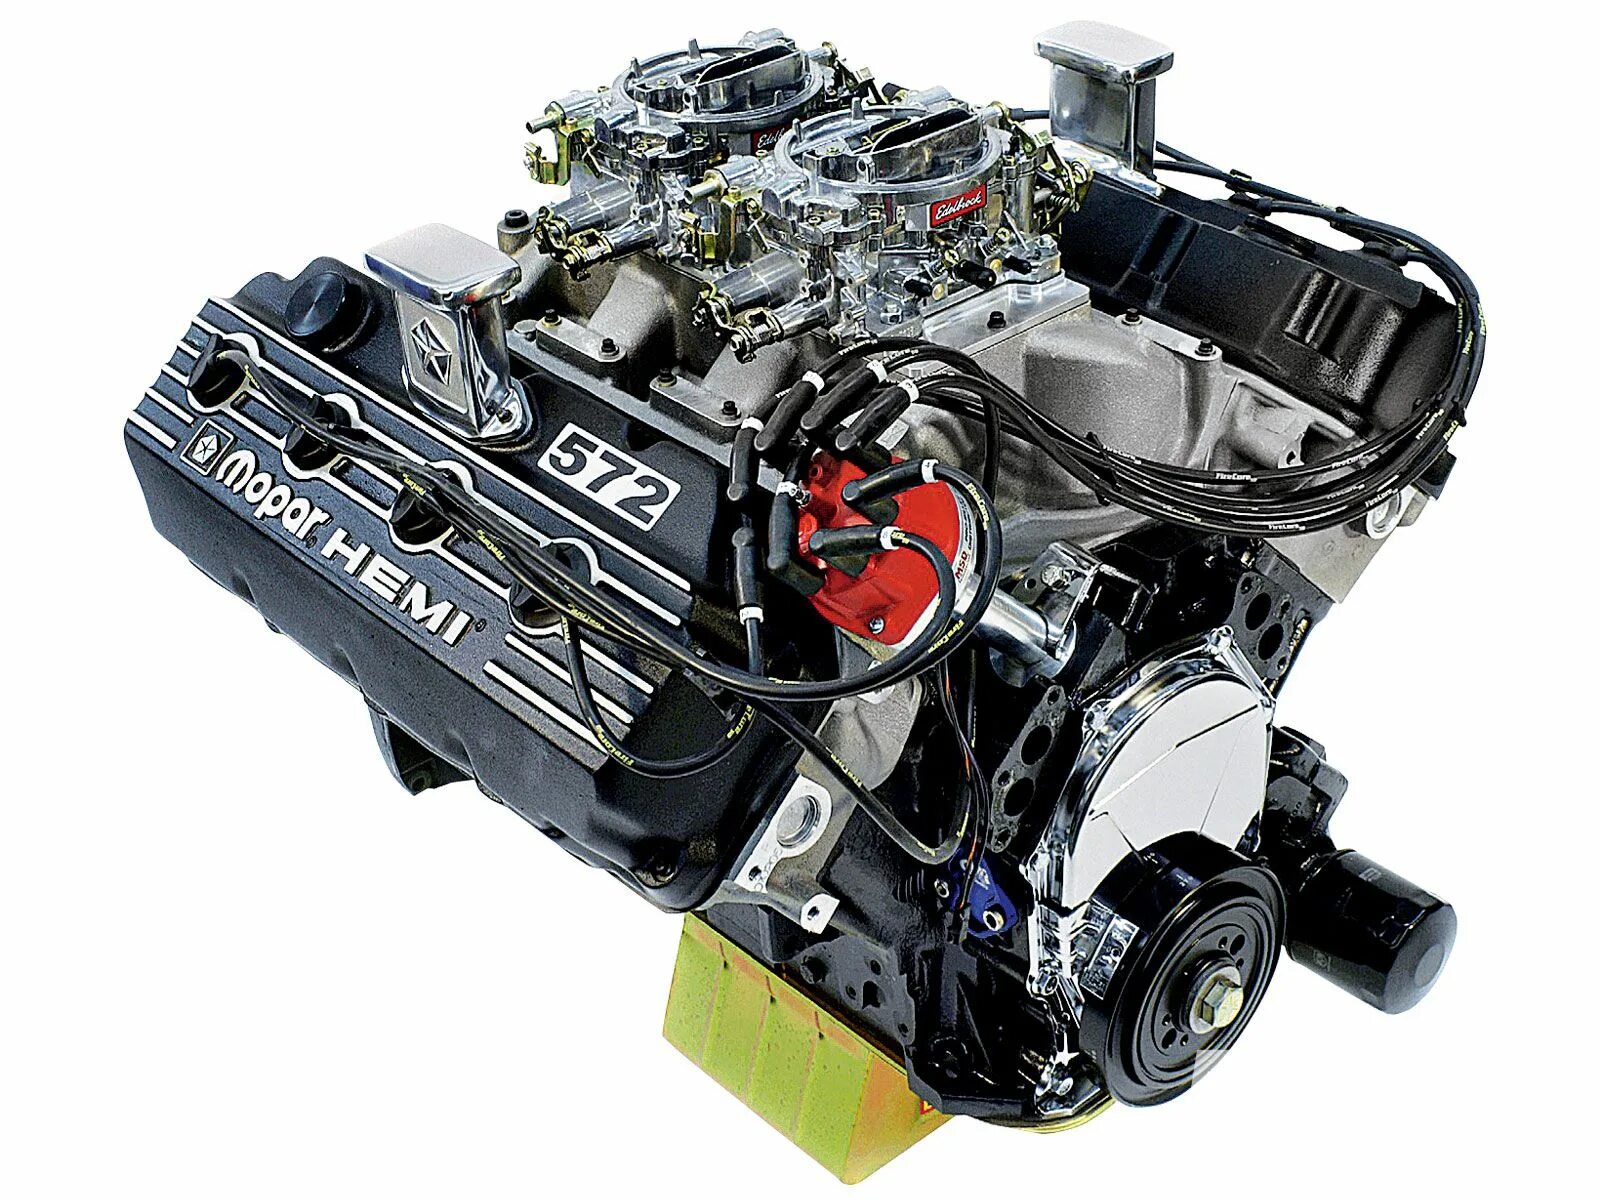 Мотор Hemi v8. 426 Hemi v8. Двигатель 6.4 Hemi v8. Chrysler Hemi 426. Производитель двигатель автомобиль